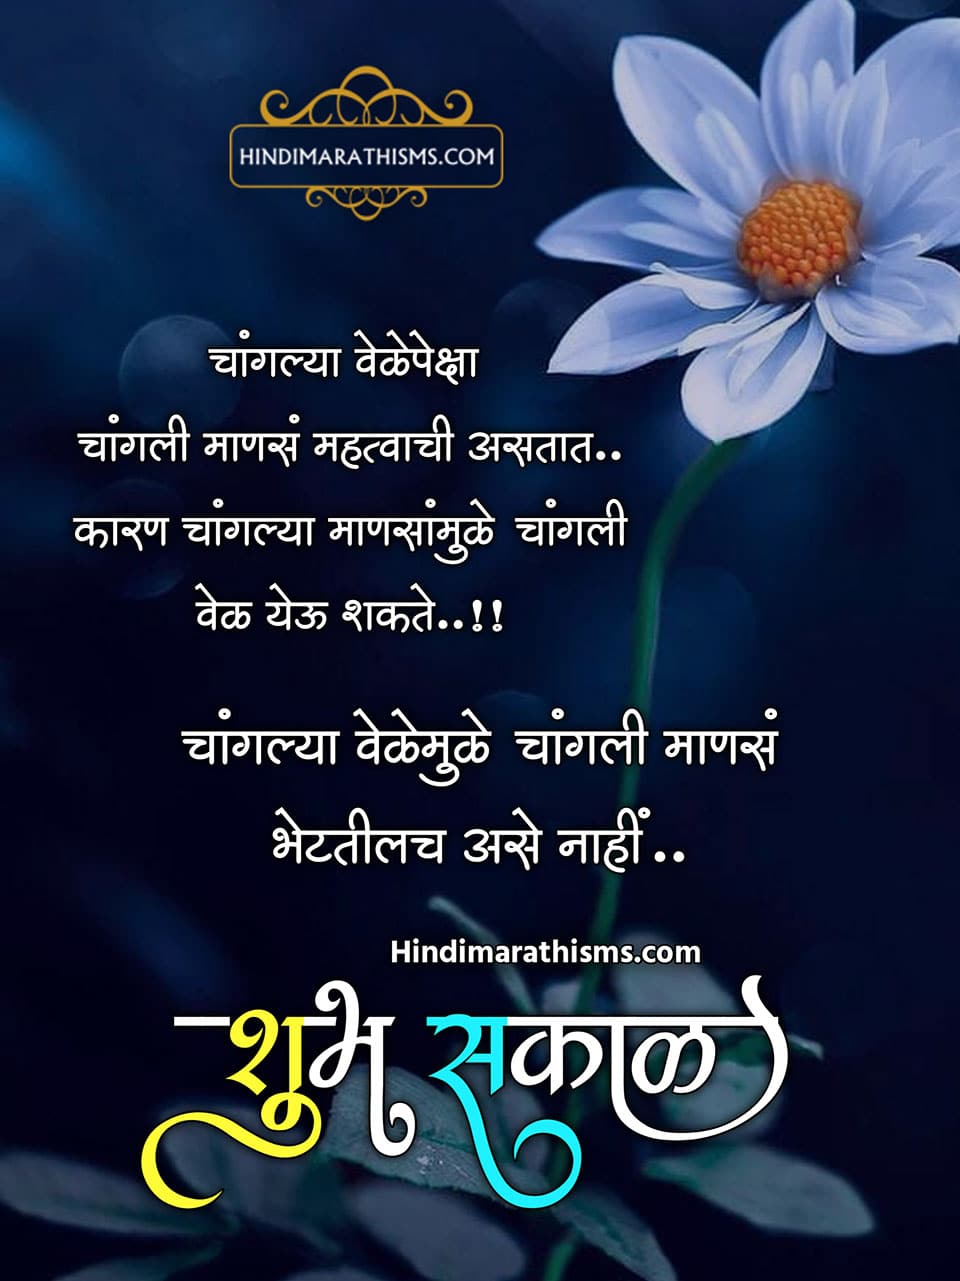 Good Morning Quotes Marathi 500 à¤¶ à¤­ à¤¸à¤ à¤³ à¤¸ à¤ª à¤°à¤­ à¤¤ à¤¸ à¤µ à¤ à¤° à¤®à¤° à¤  Good morning messages in marathi 2020. good morning quotes marathi 500 à¤¶ à¤­